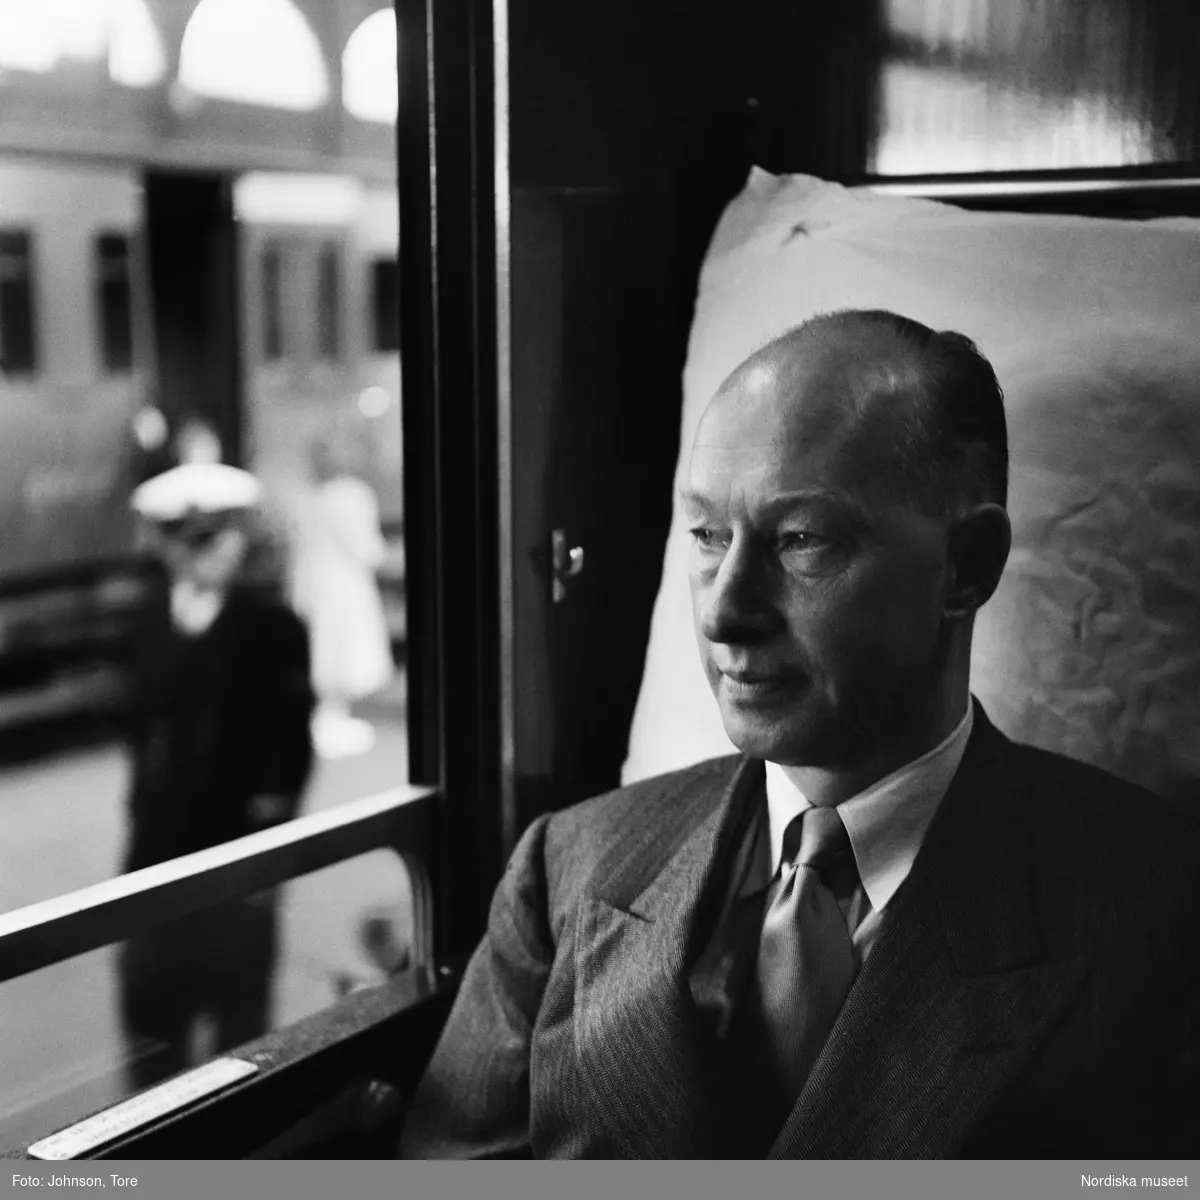 Porträtt av fotografens far, Eyvind Johnson, i en tågkupé